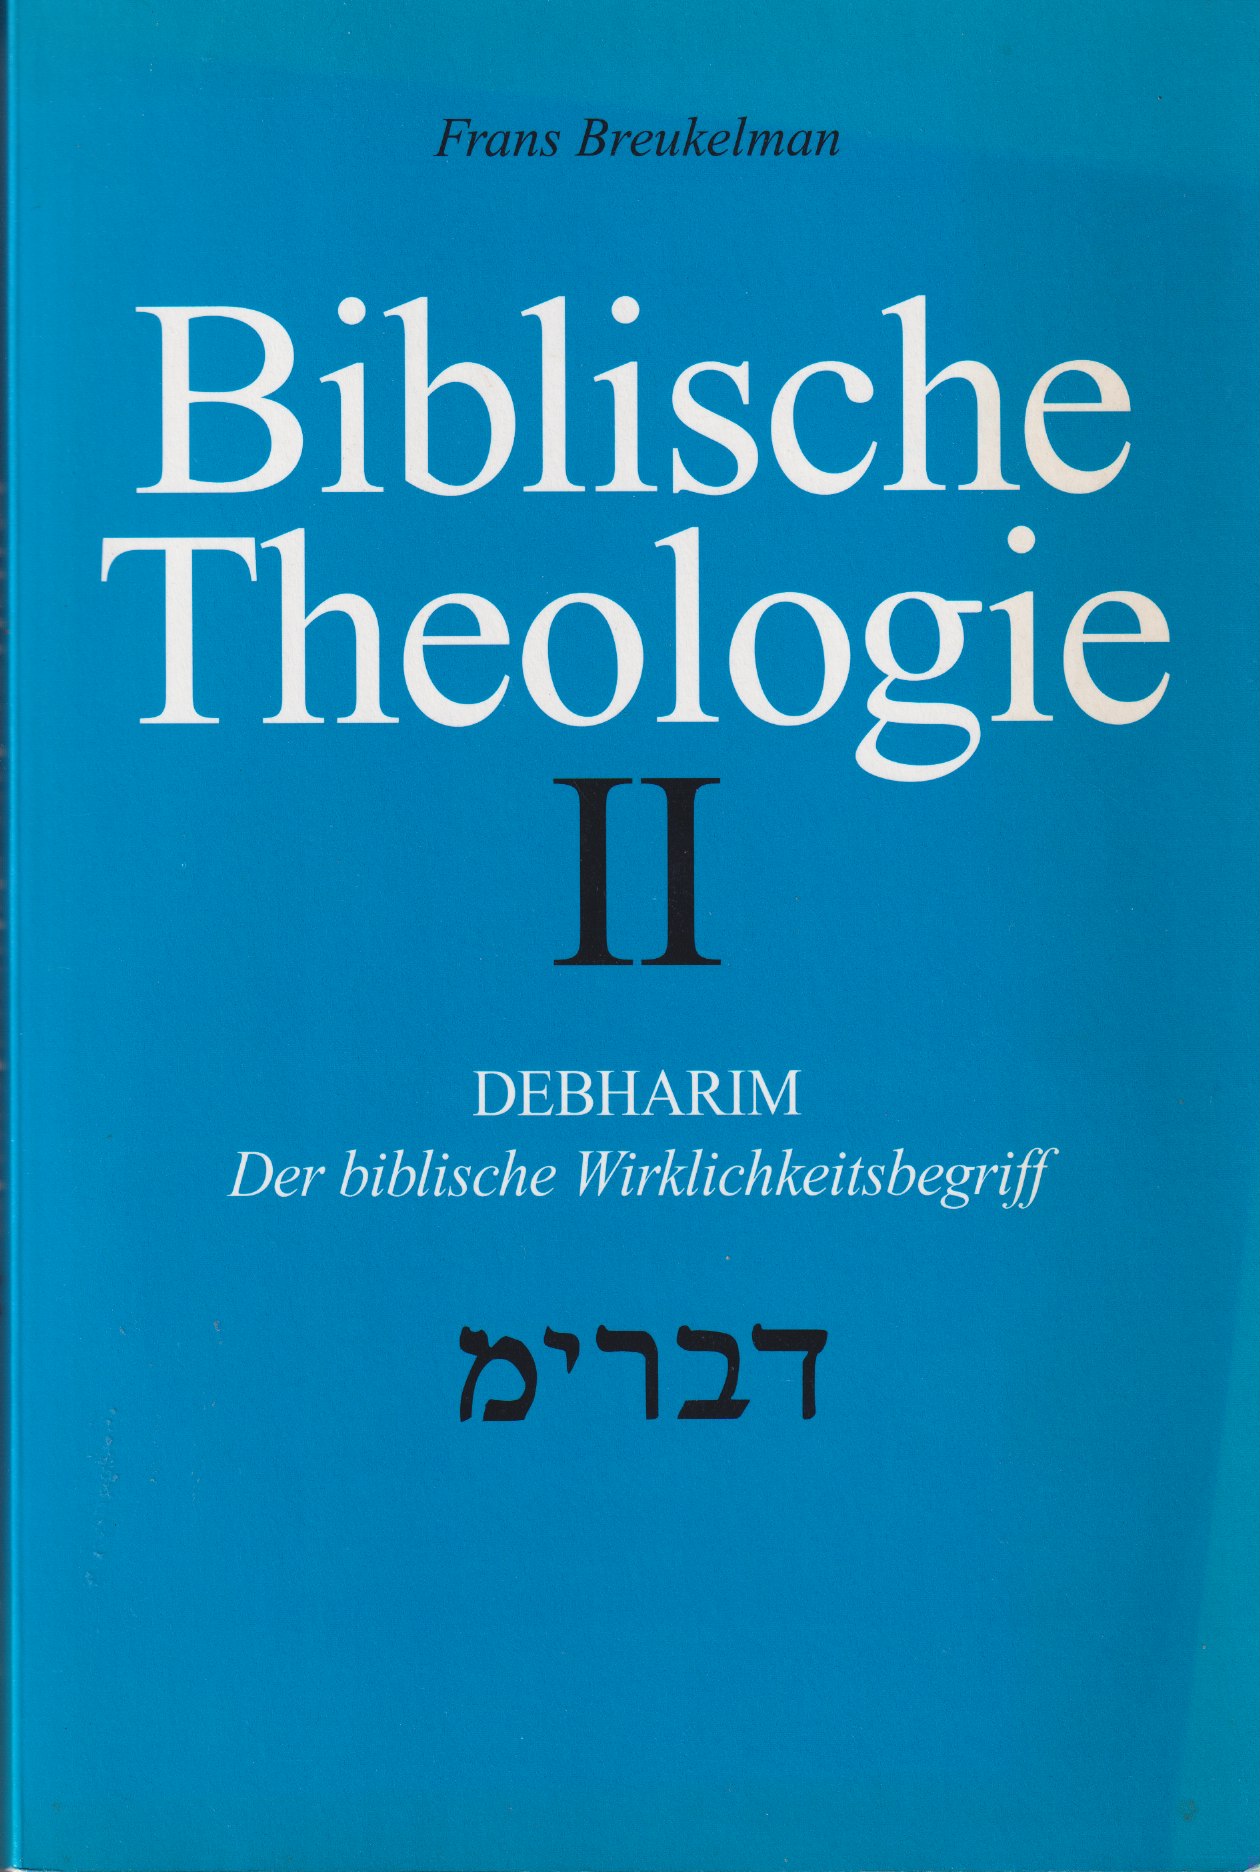 Bijbelse theologie. Debharim : der biblische Wirklichkeitsbegriff des Seins in der Tat - Breukelman, Frans H.